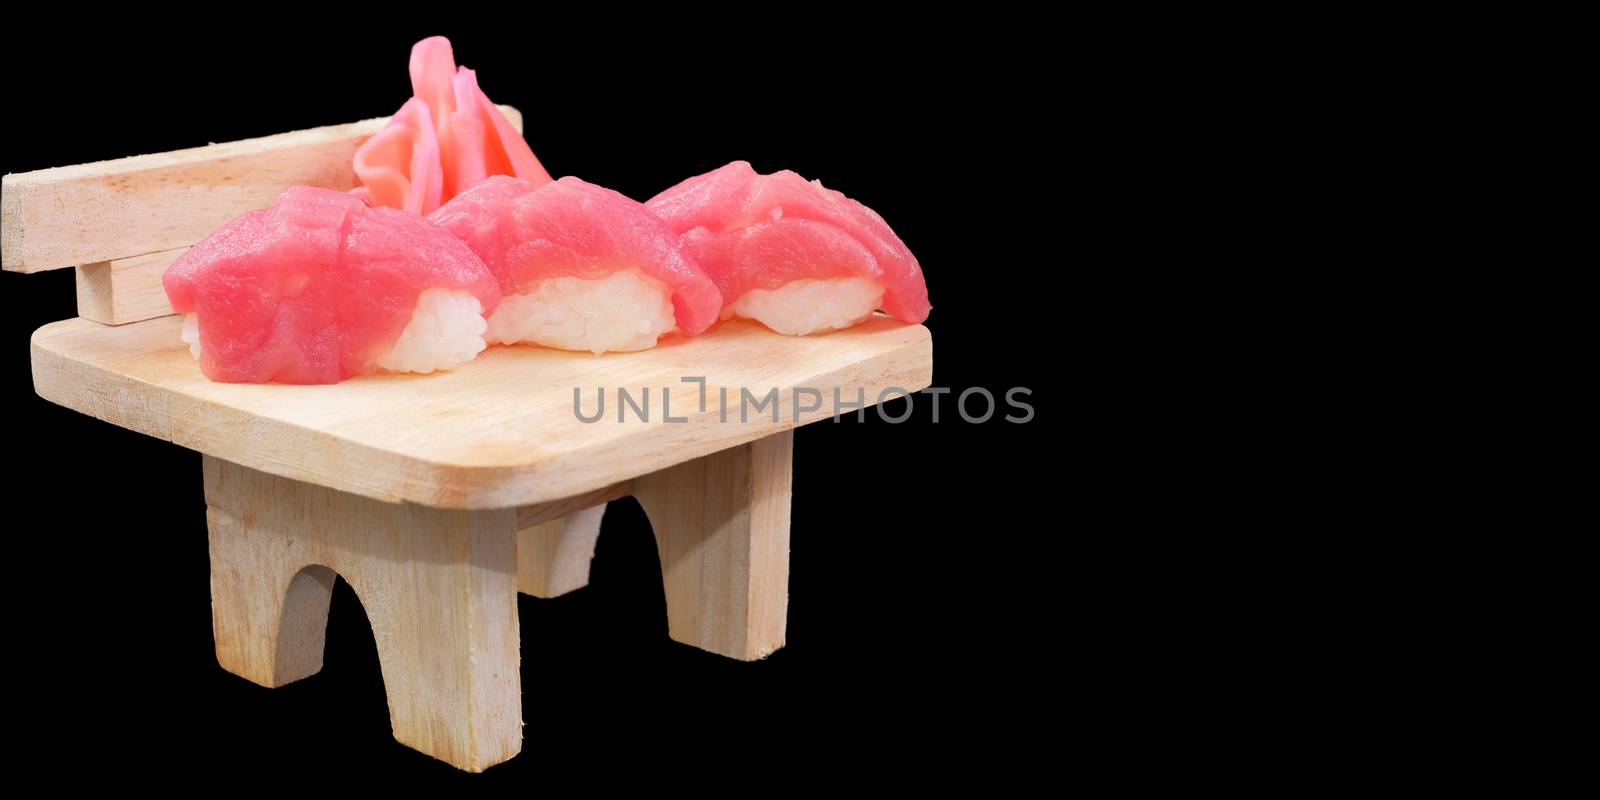 Japanese Cuisine - Salmon Sushi Roll on wood plate in blackbackg by Surasak